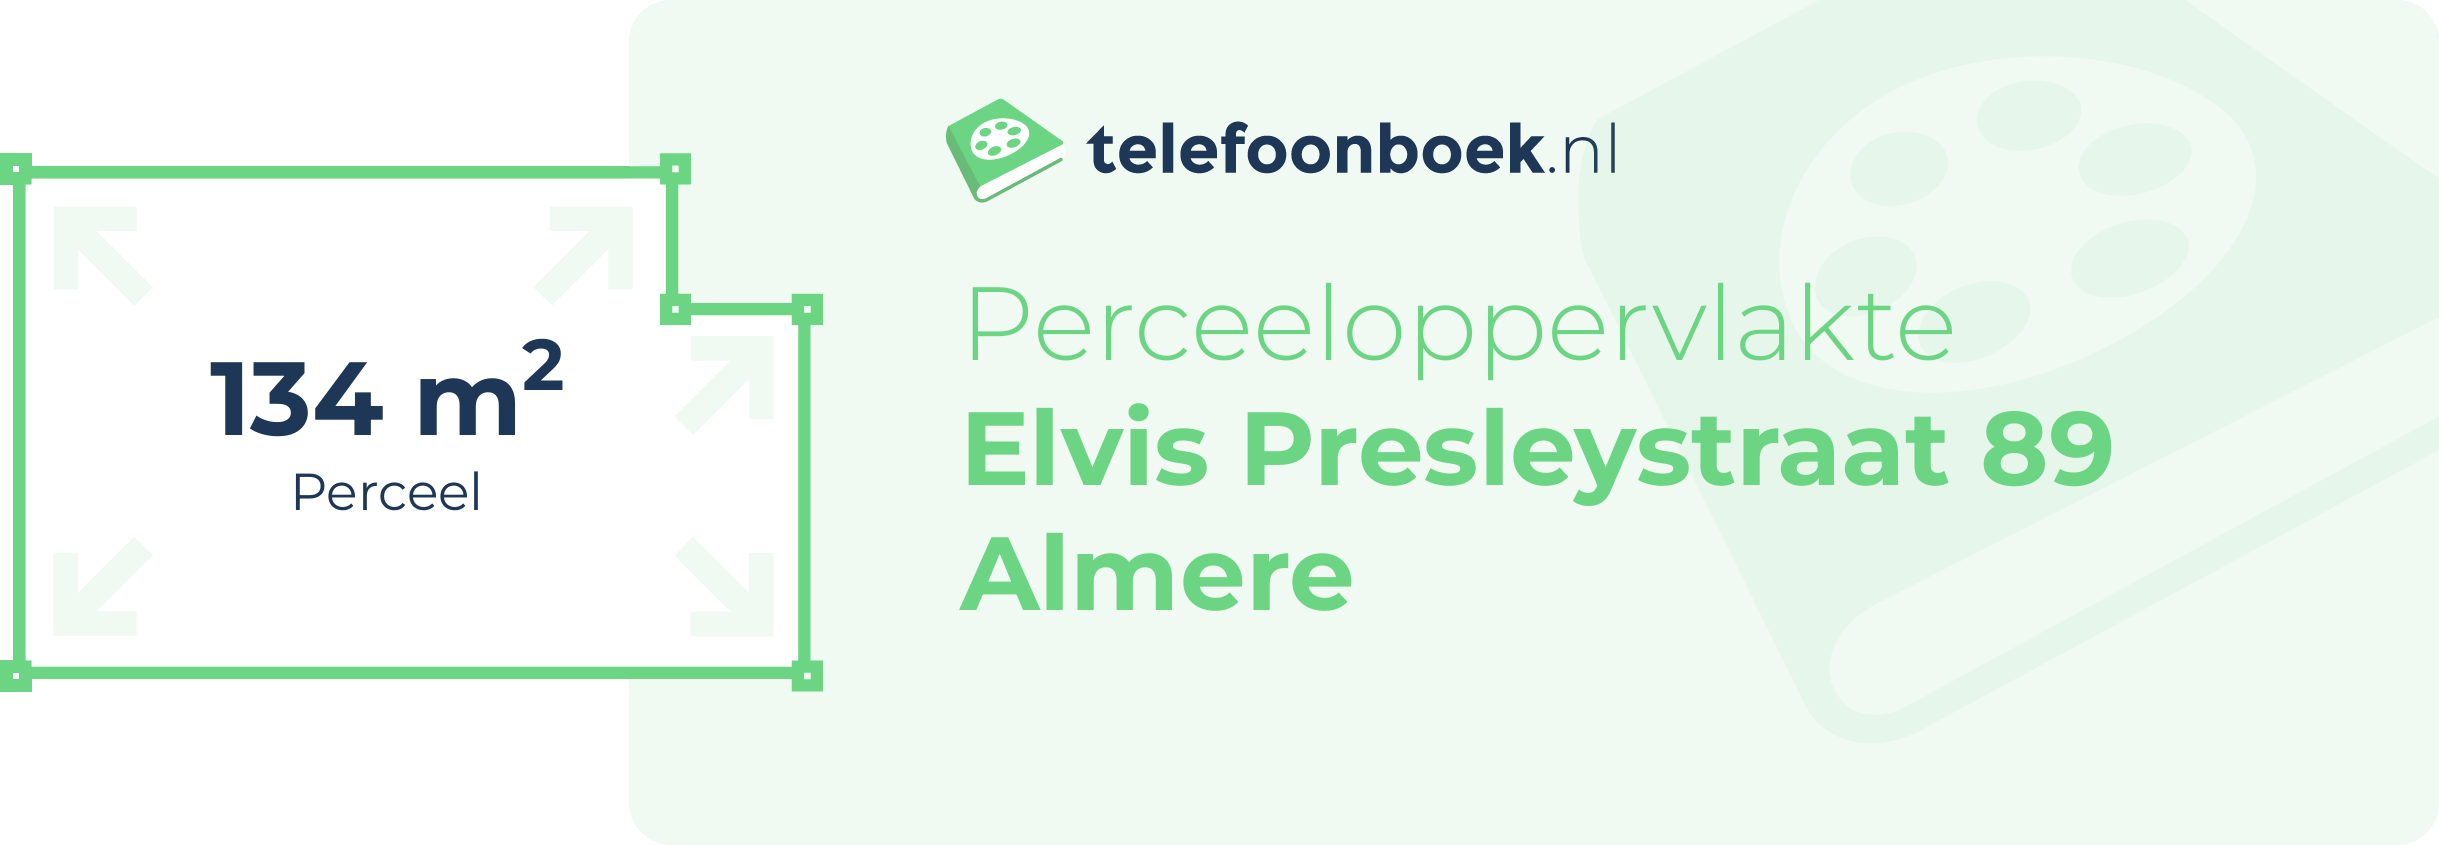 Perceeloppervlakte Elvis Presleystraat 89 Almere